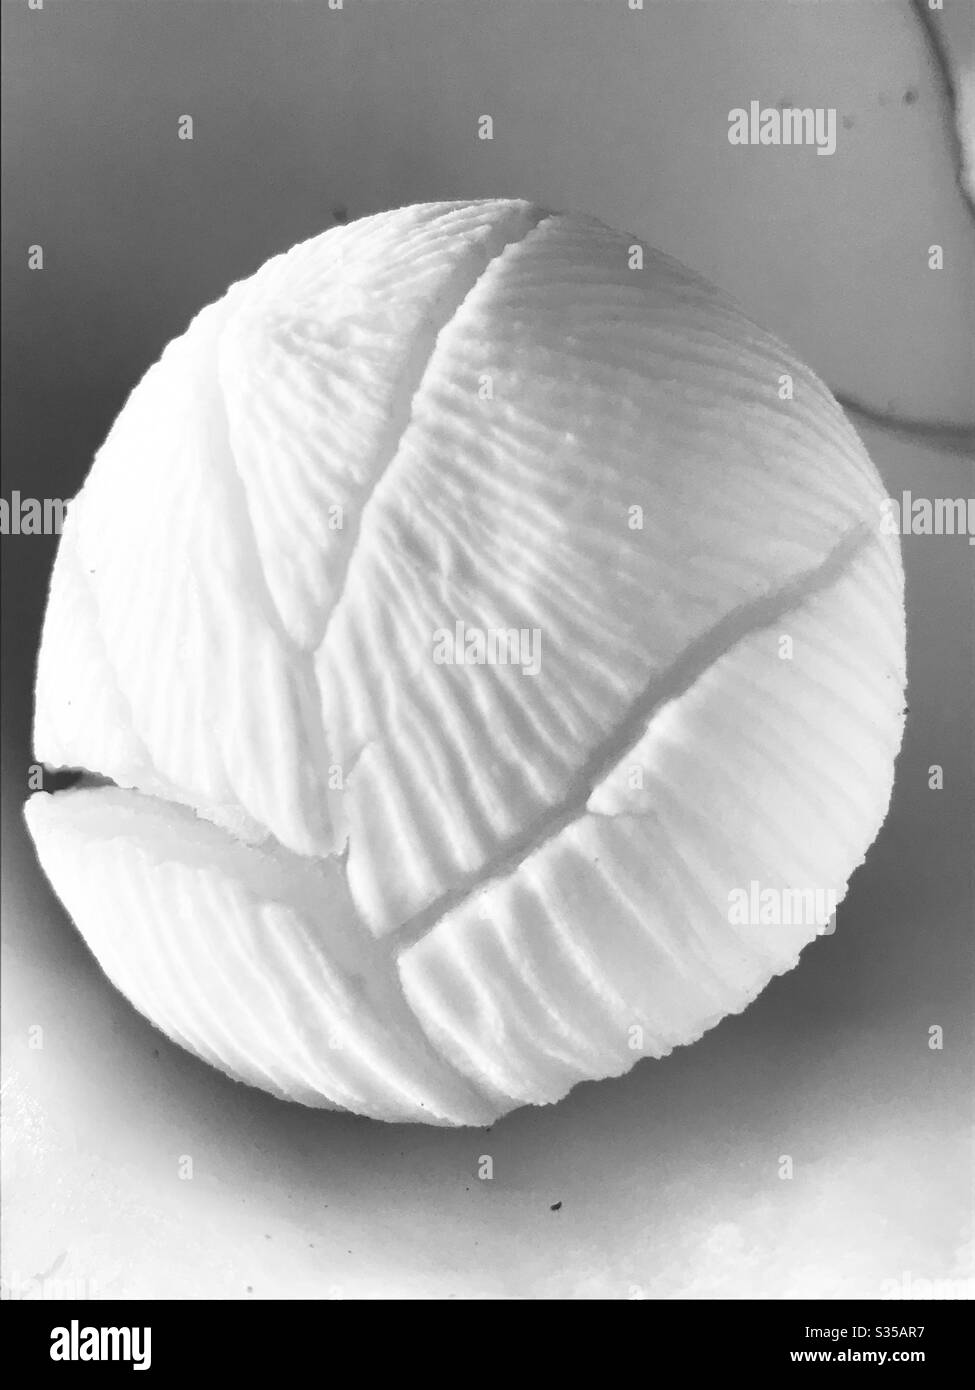 Cocco cotiledon-fresco cracked cocco trovato all'interno del cocco embrione aka cocco Apple-era realmente pronto a sparare alcune foglie, ricco di nutrienti, morbido spugnoso & commestibile, Singapore, immagine in bianco e nero Foto Stock